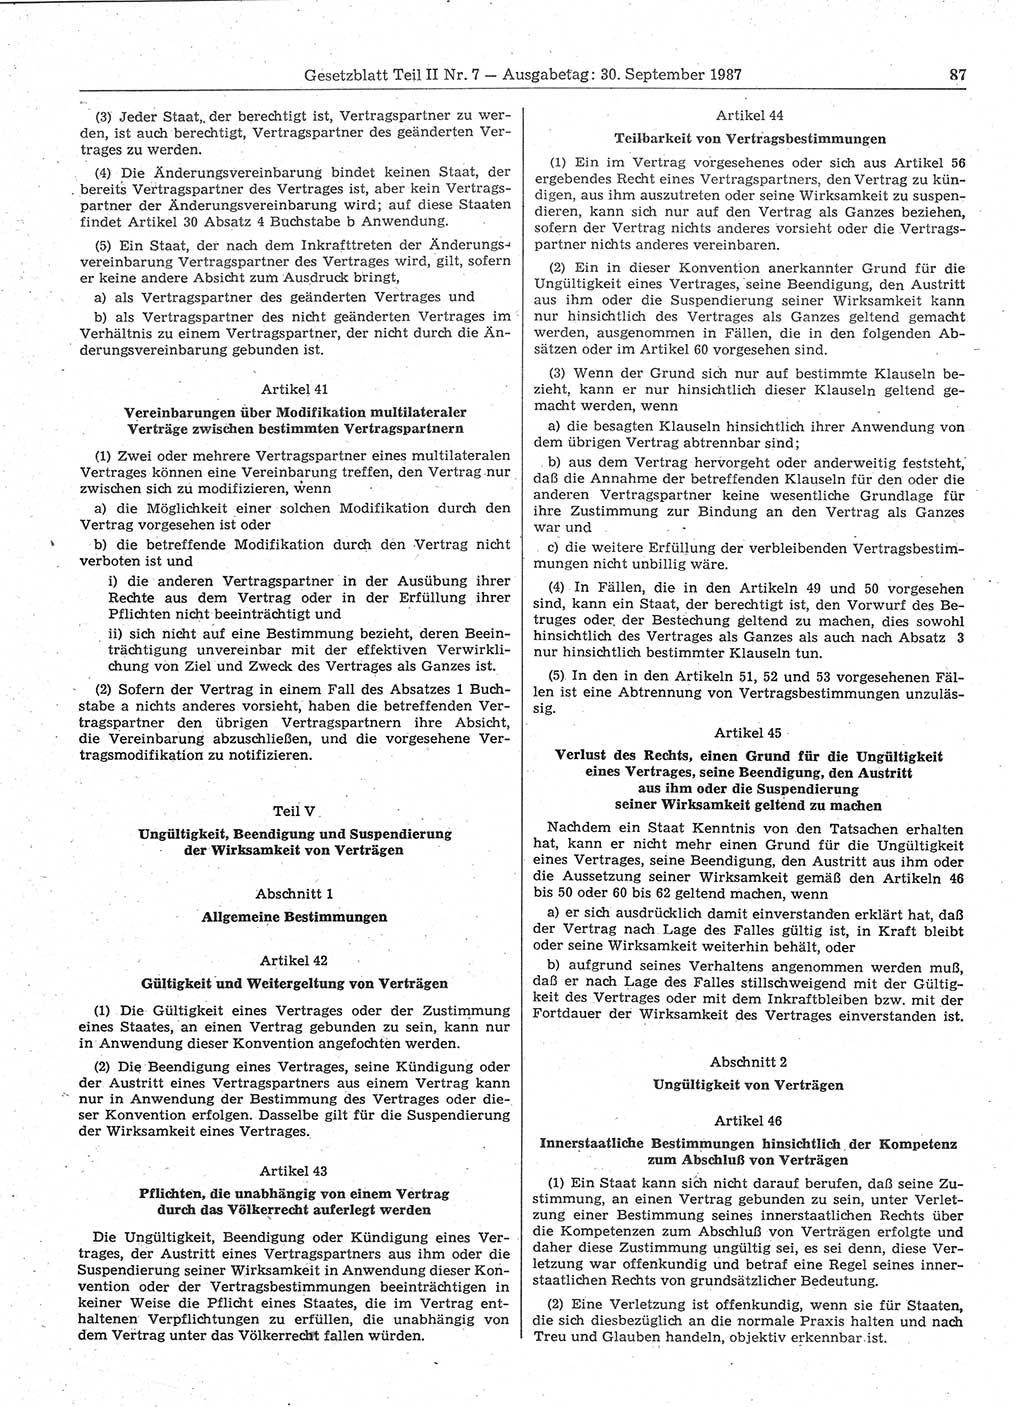 Gesetzblatt (GBl.) der Deutschen Demokratischen Republik (DDR) Teil ⅠⅠ 1987, Seite 87 (GBl. DDR ⅠⅠ 1987, S. 87)